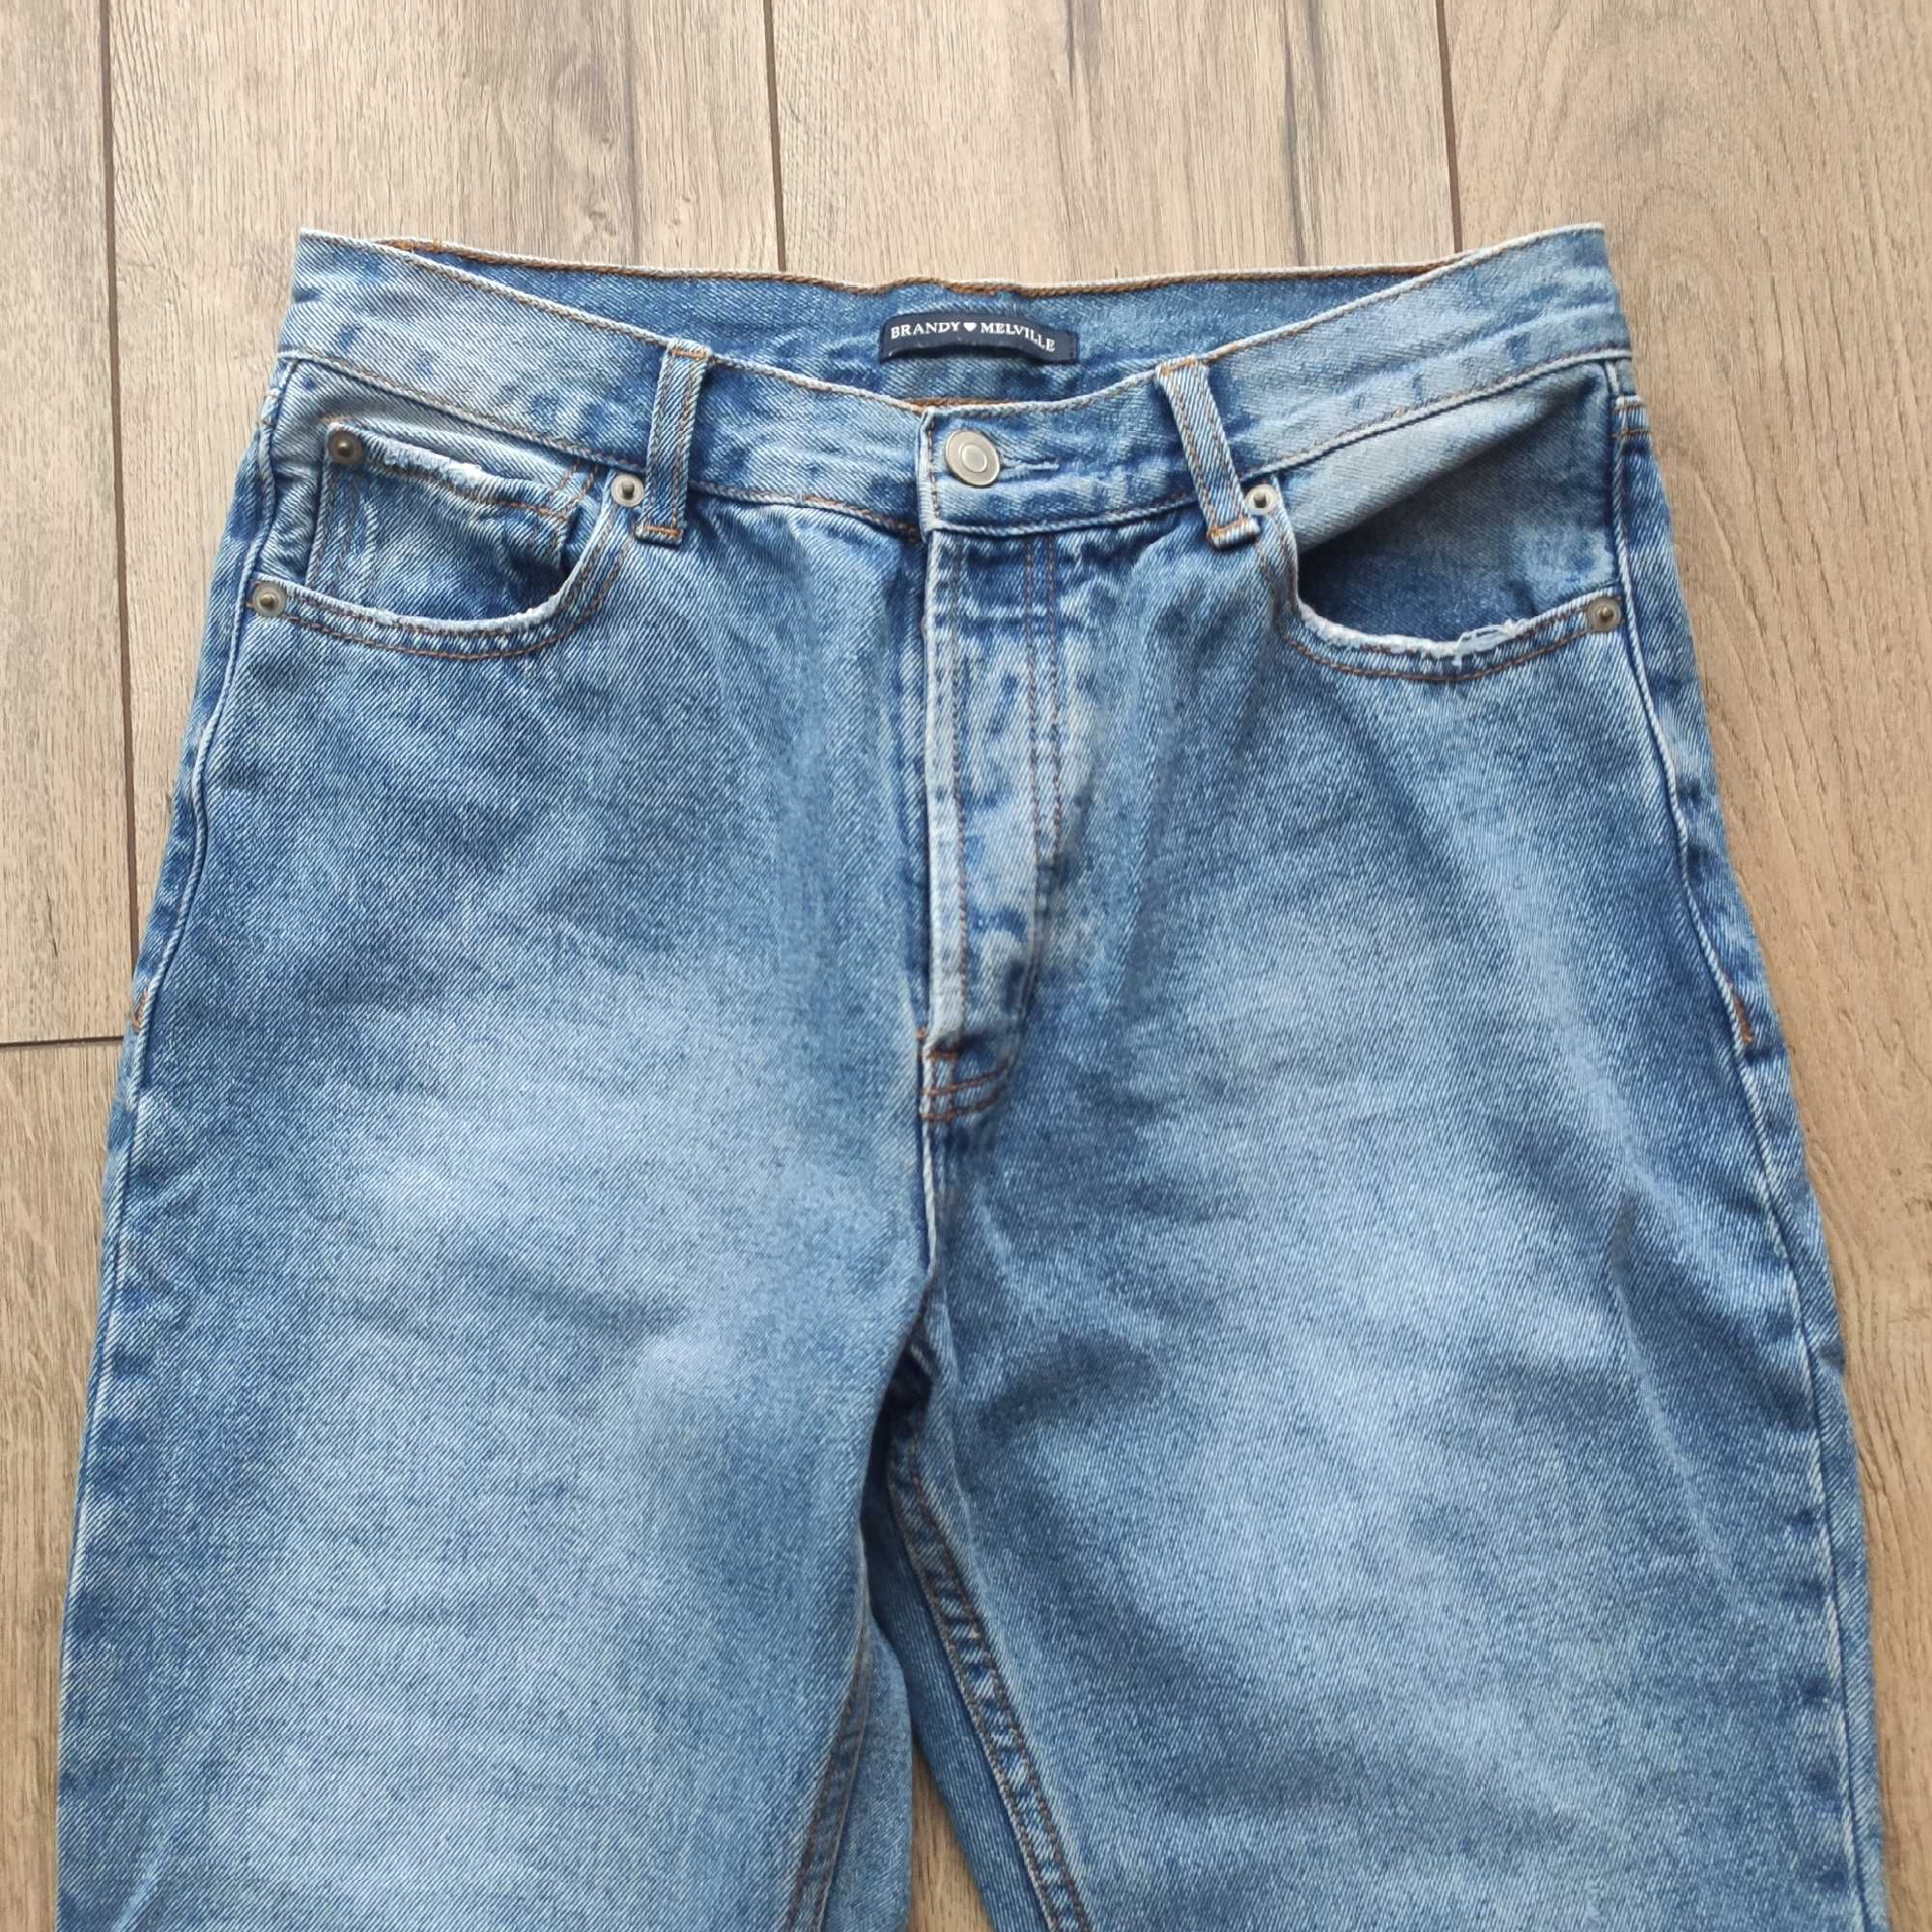 Spodnie jeansowe S/M